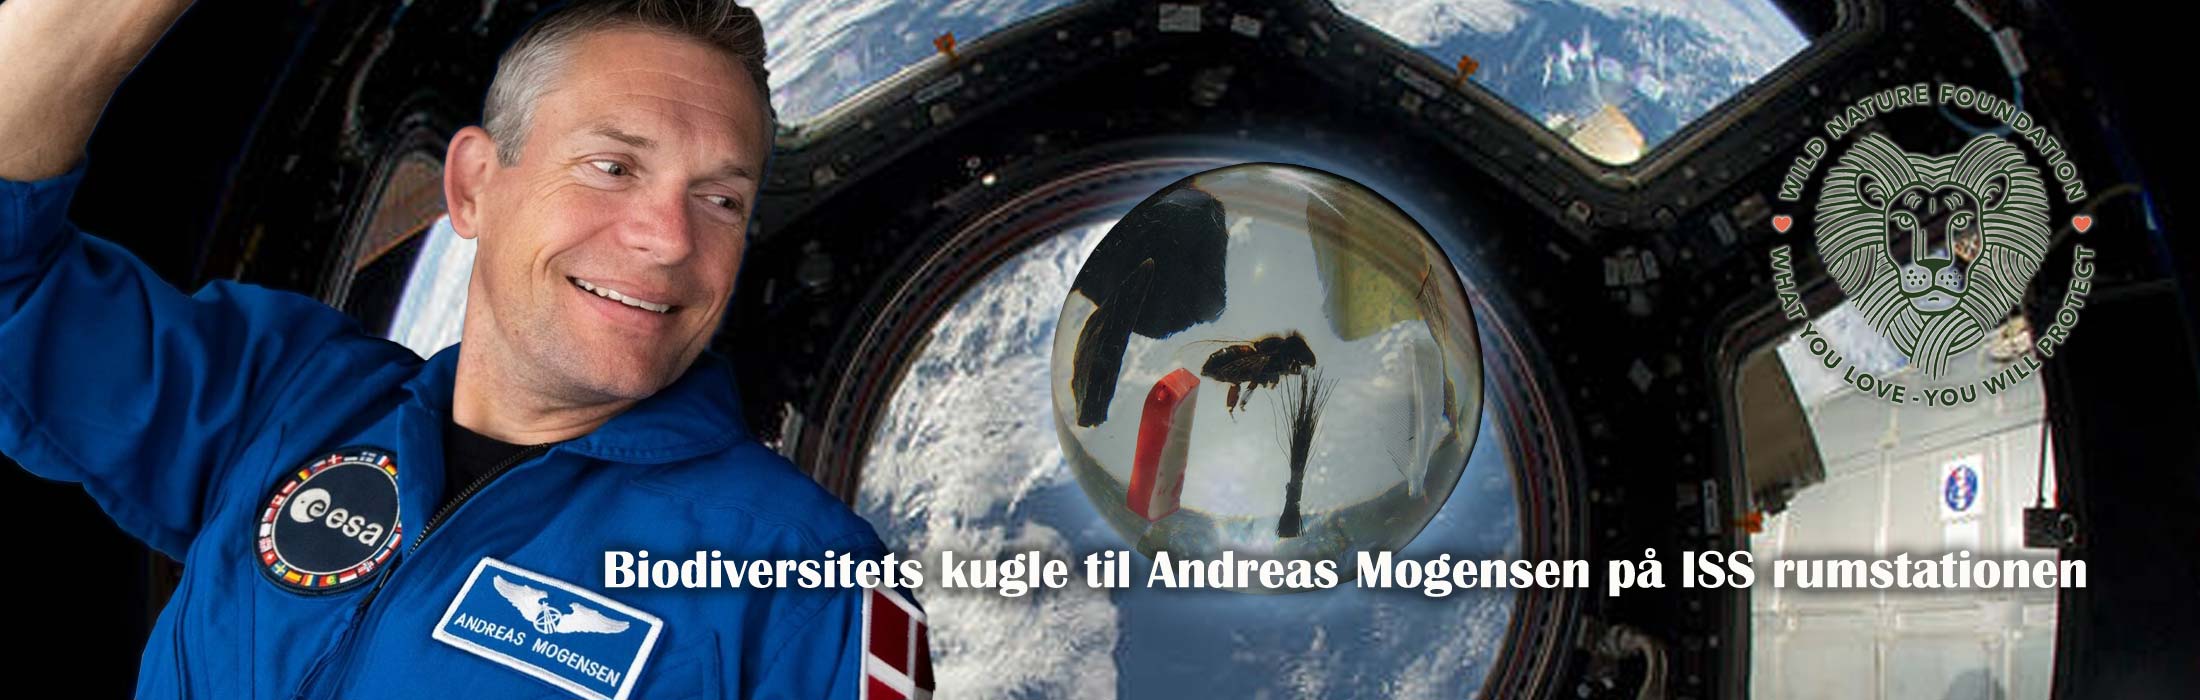 Andreas-Mogensen-Biodiversitets-kugle-til-rumstationen